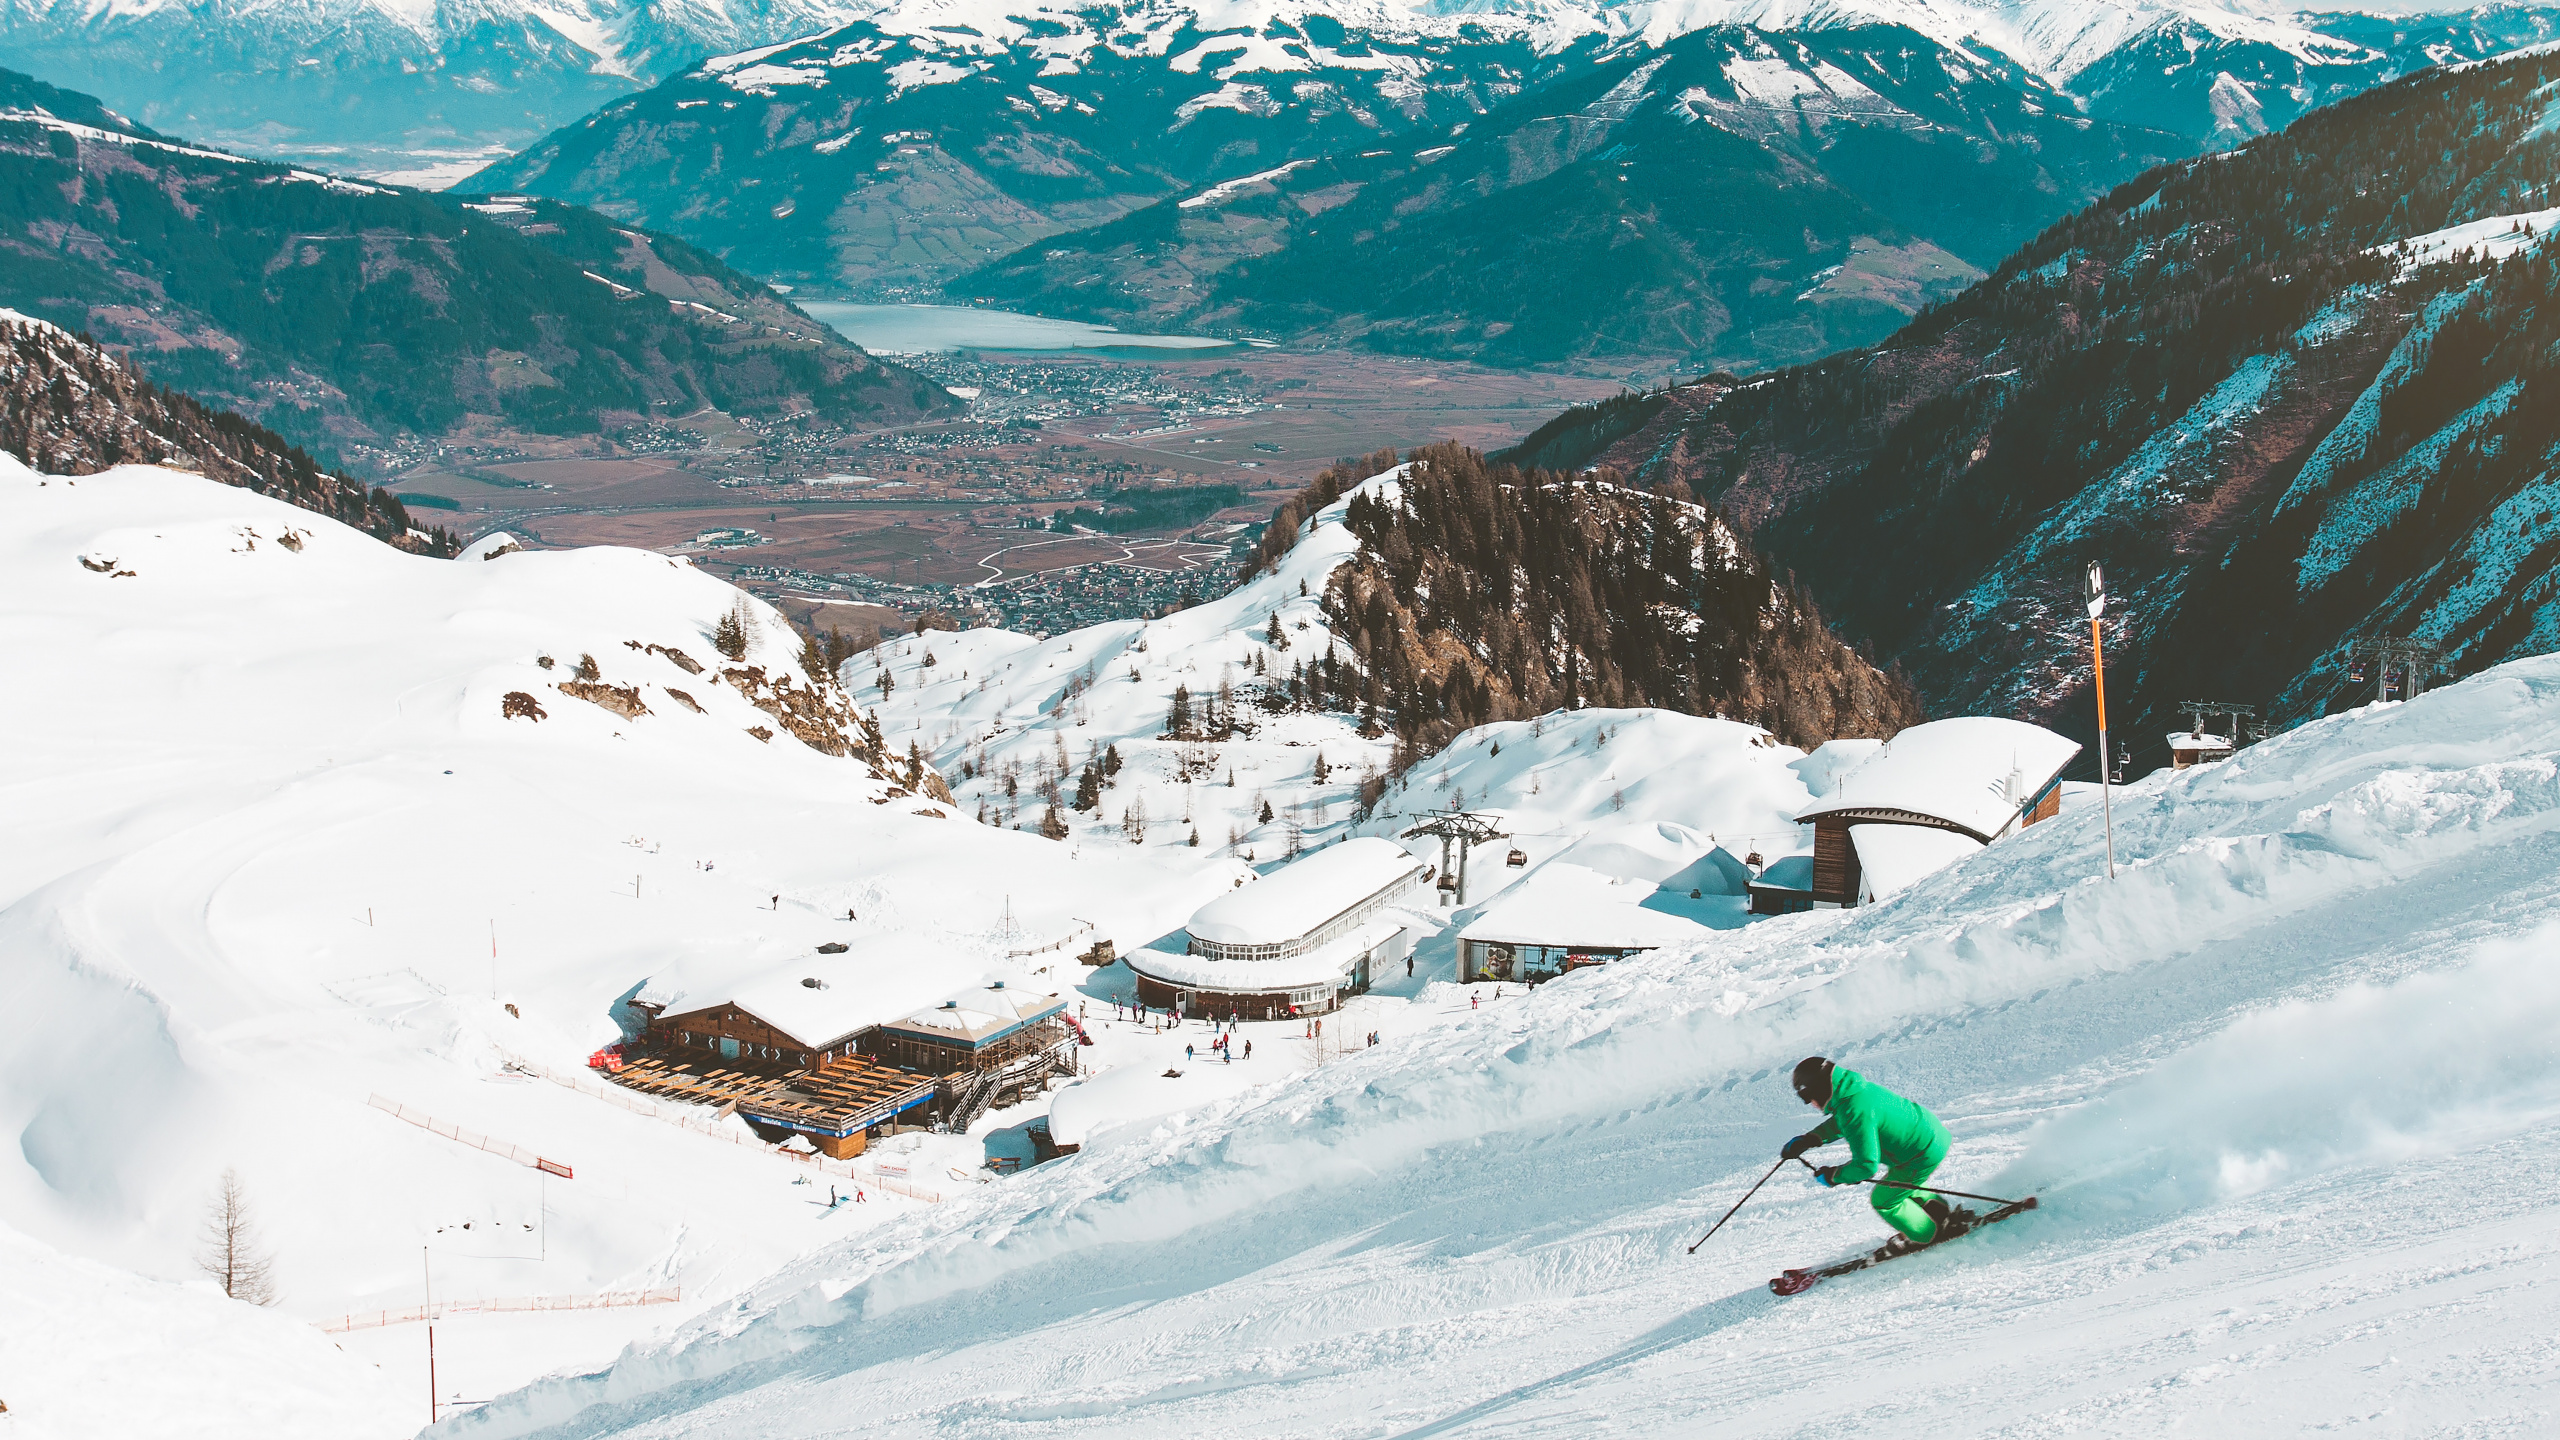 Estación de Esquí, Resort, Nieve, Las Formaciones Montañosas, Montaña. Wallpaper in 2560x1440 Resolution